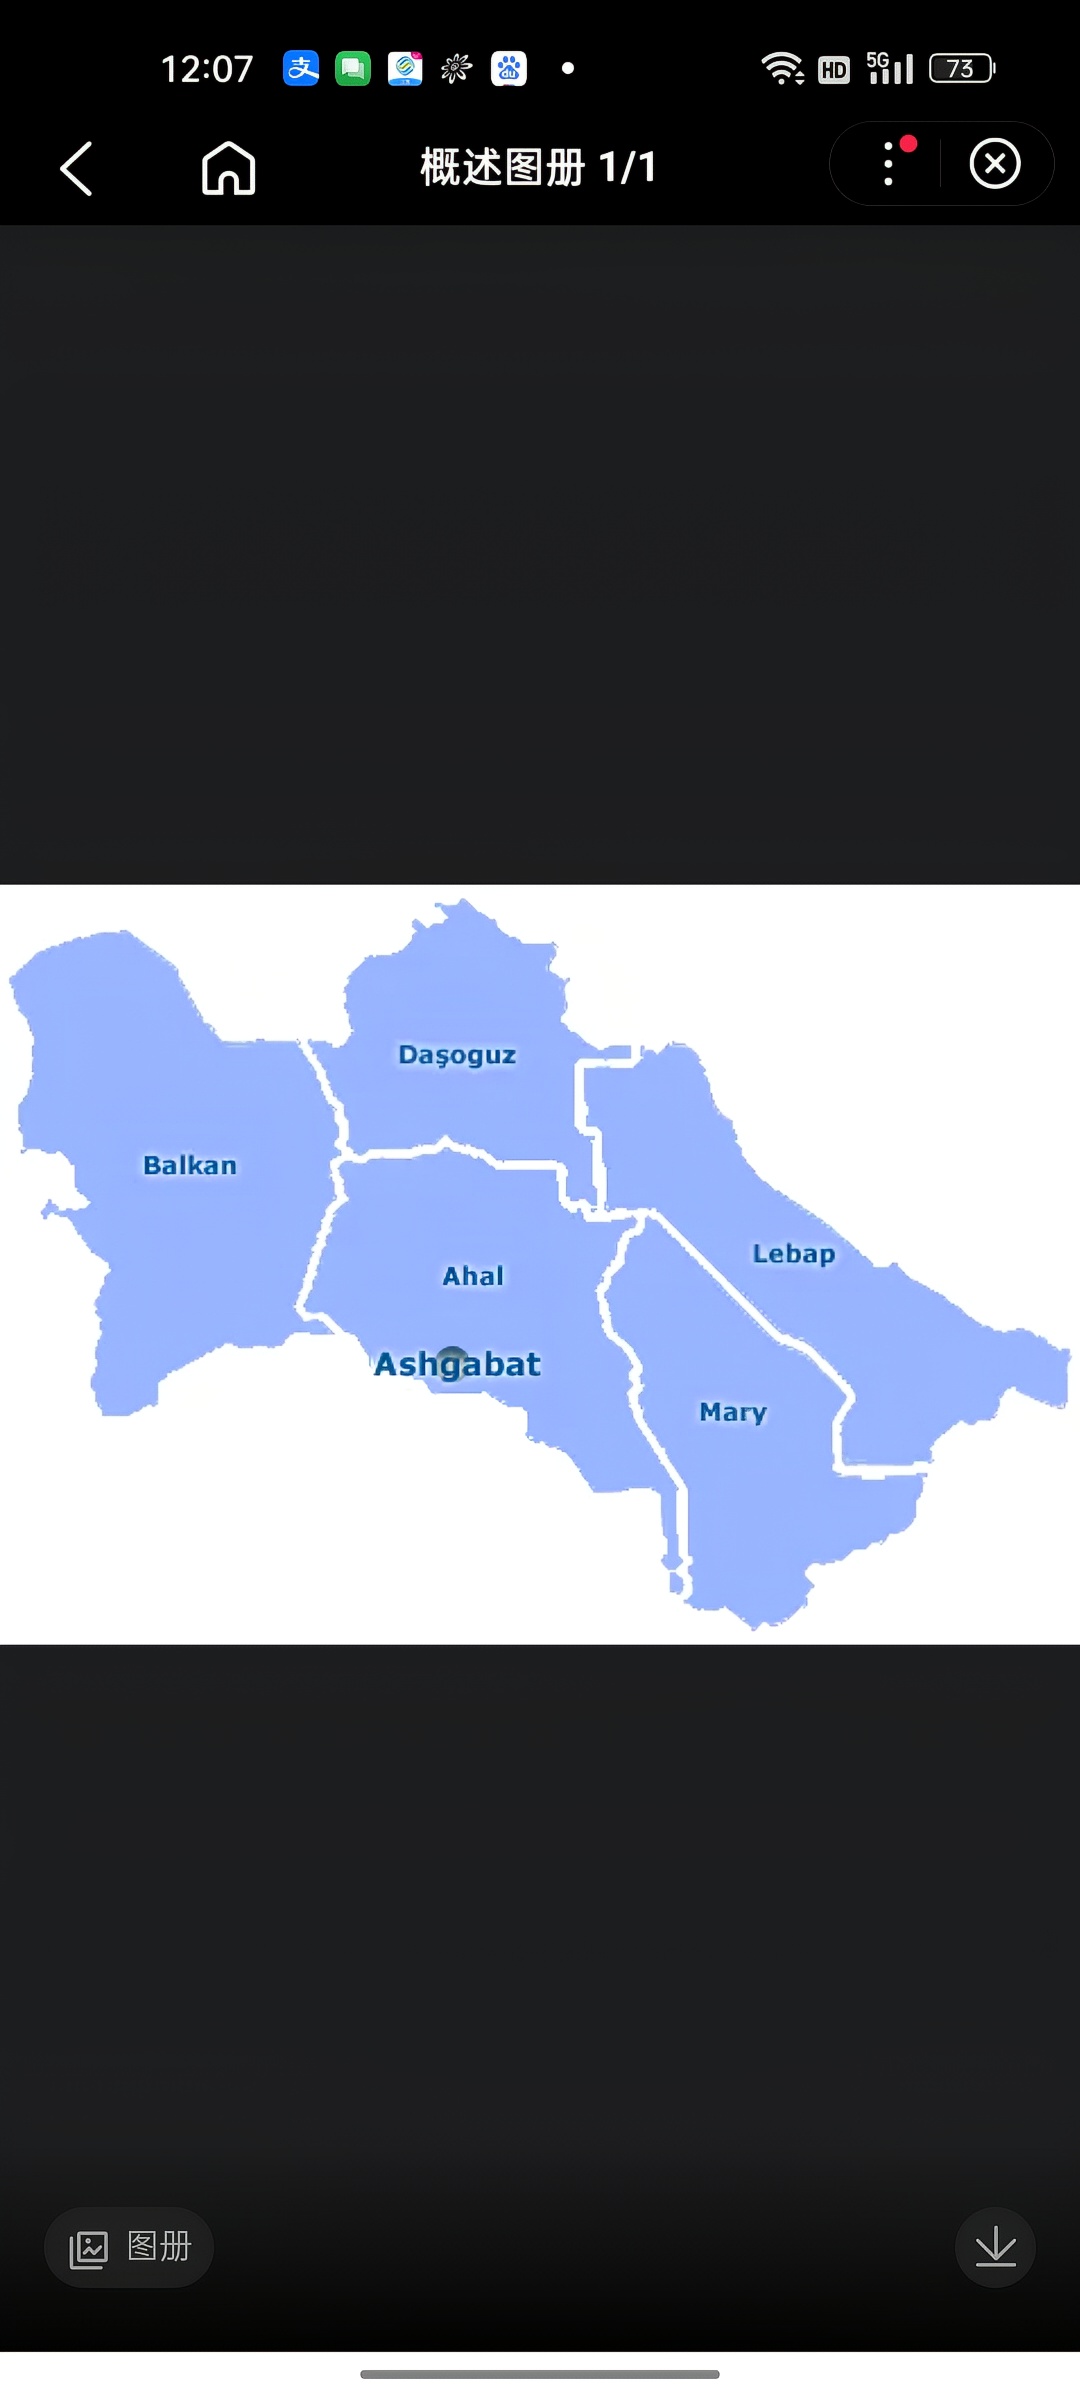 巴尔坎州位于土库曼斯坦西部，北边与哈萨克斯坦、乌兹别克斯坦接壤，东北与达绍古兹州接壤，东边与阿哈尔州